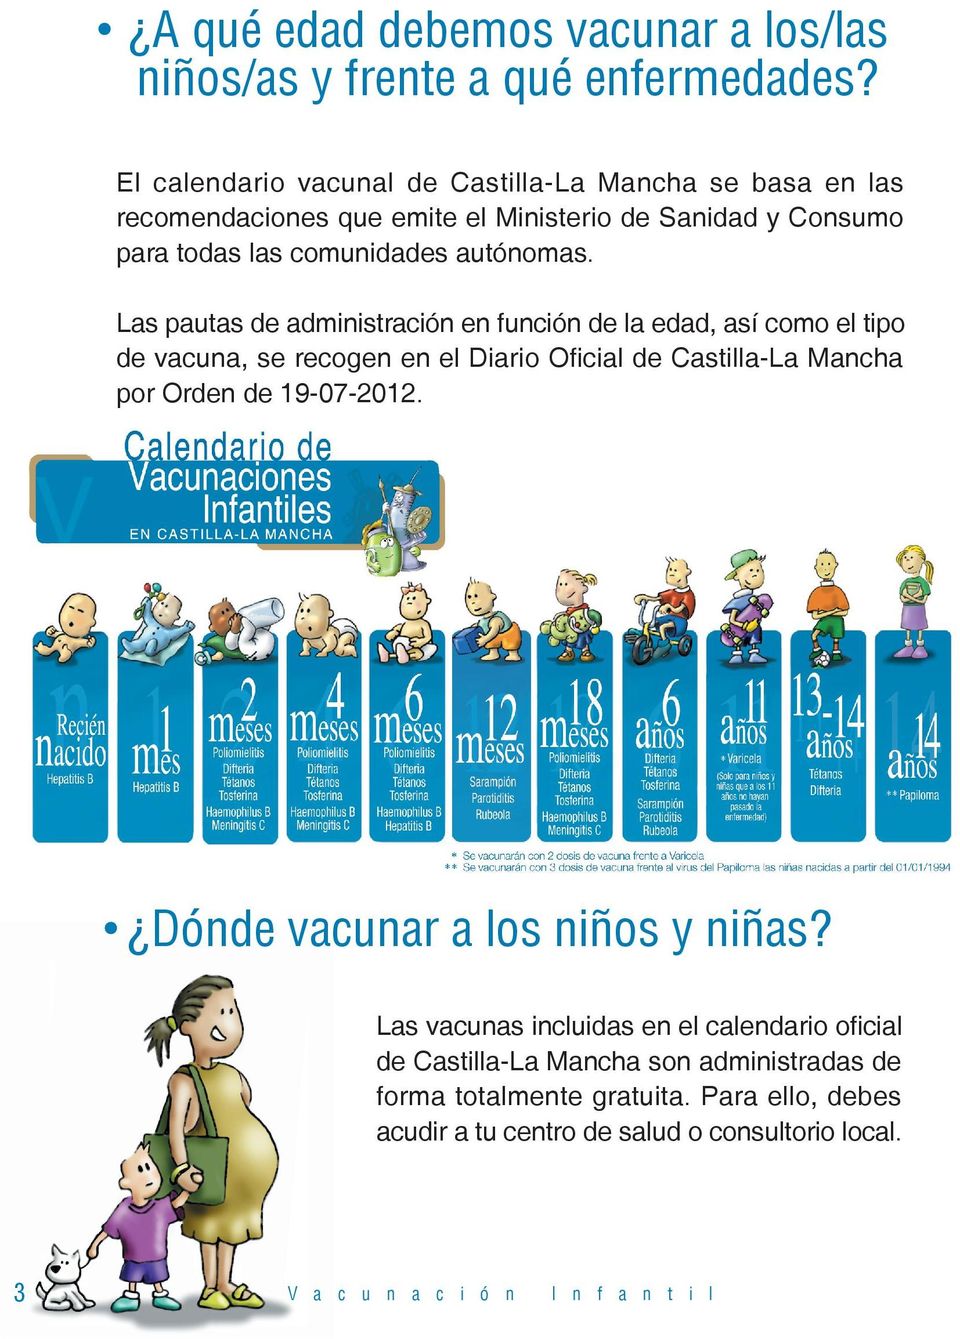 Las pautas de administración en función de la edad, así como el tipo de vacuna, se recogen en el Diario Oficial de Castilla-La Mancha por Orden de 19-07-2012.